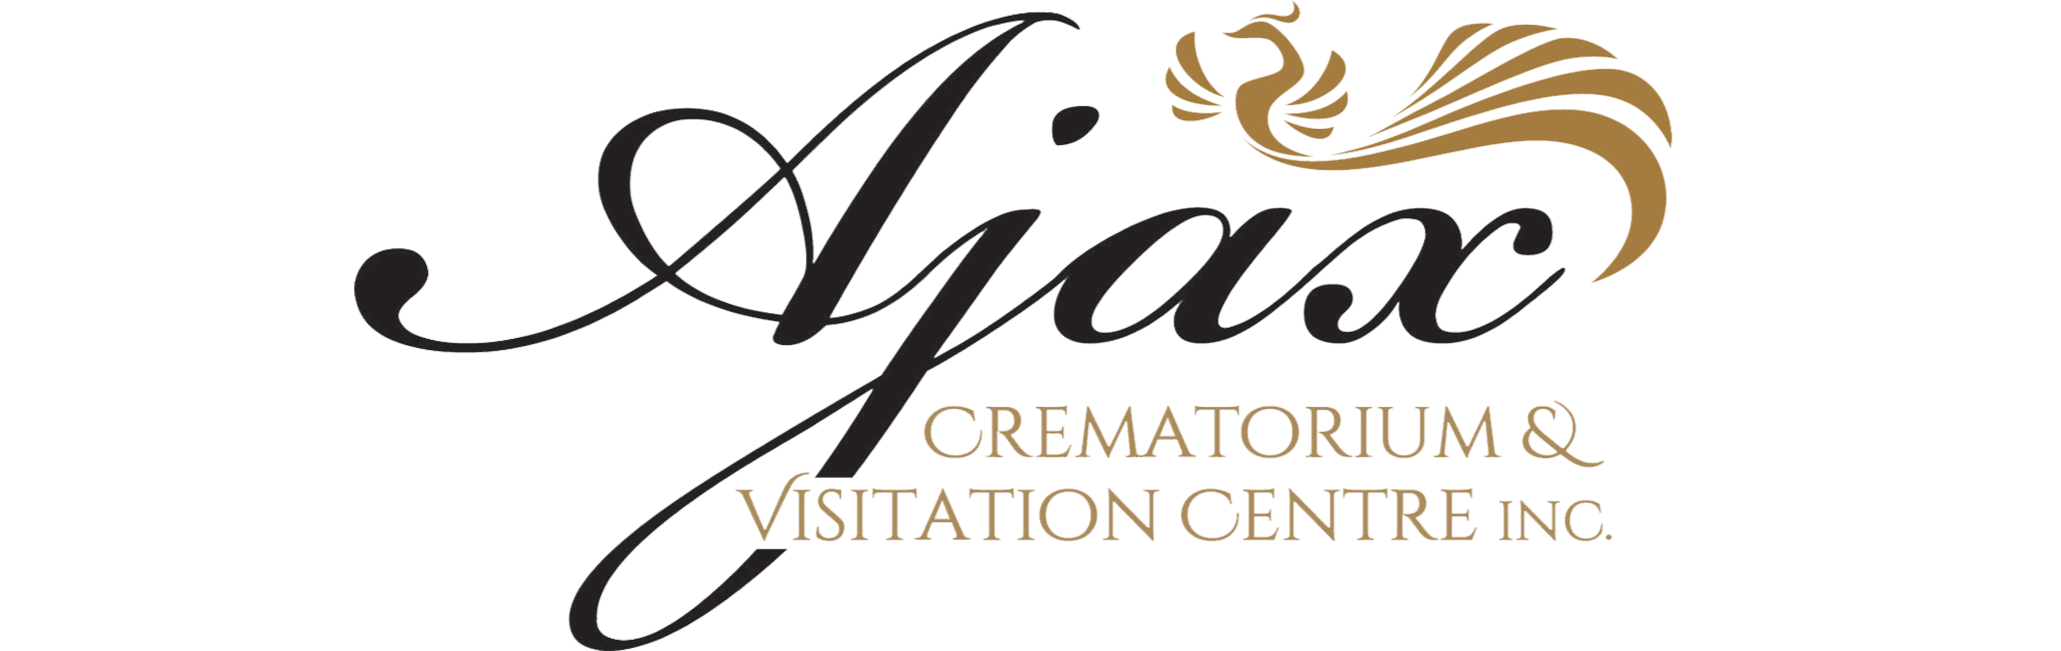 Ajax Crematorium and Visitation Centre